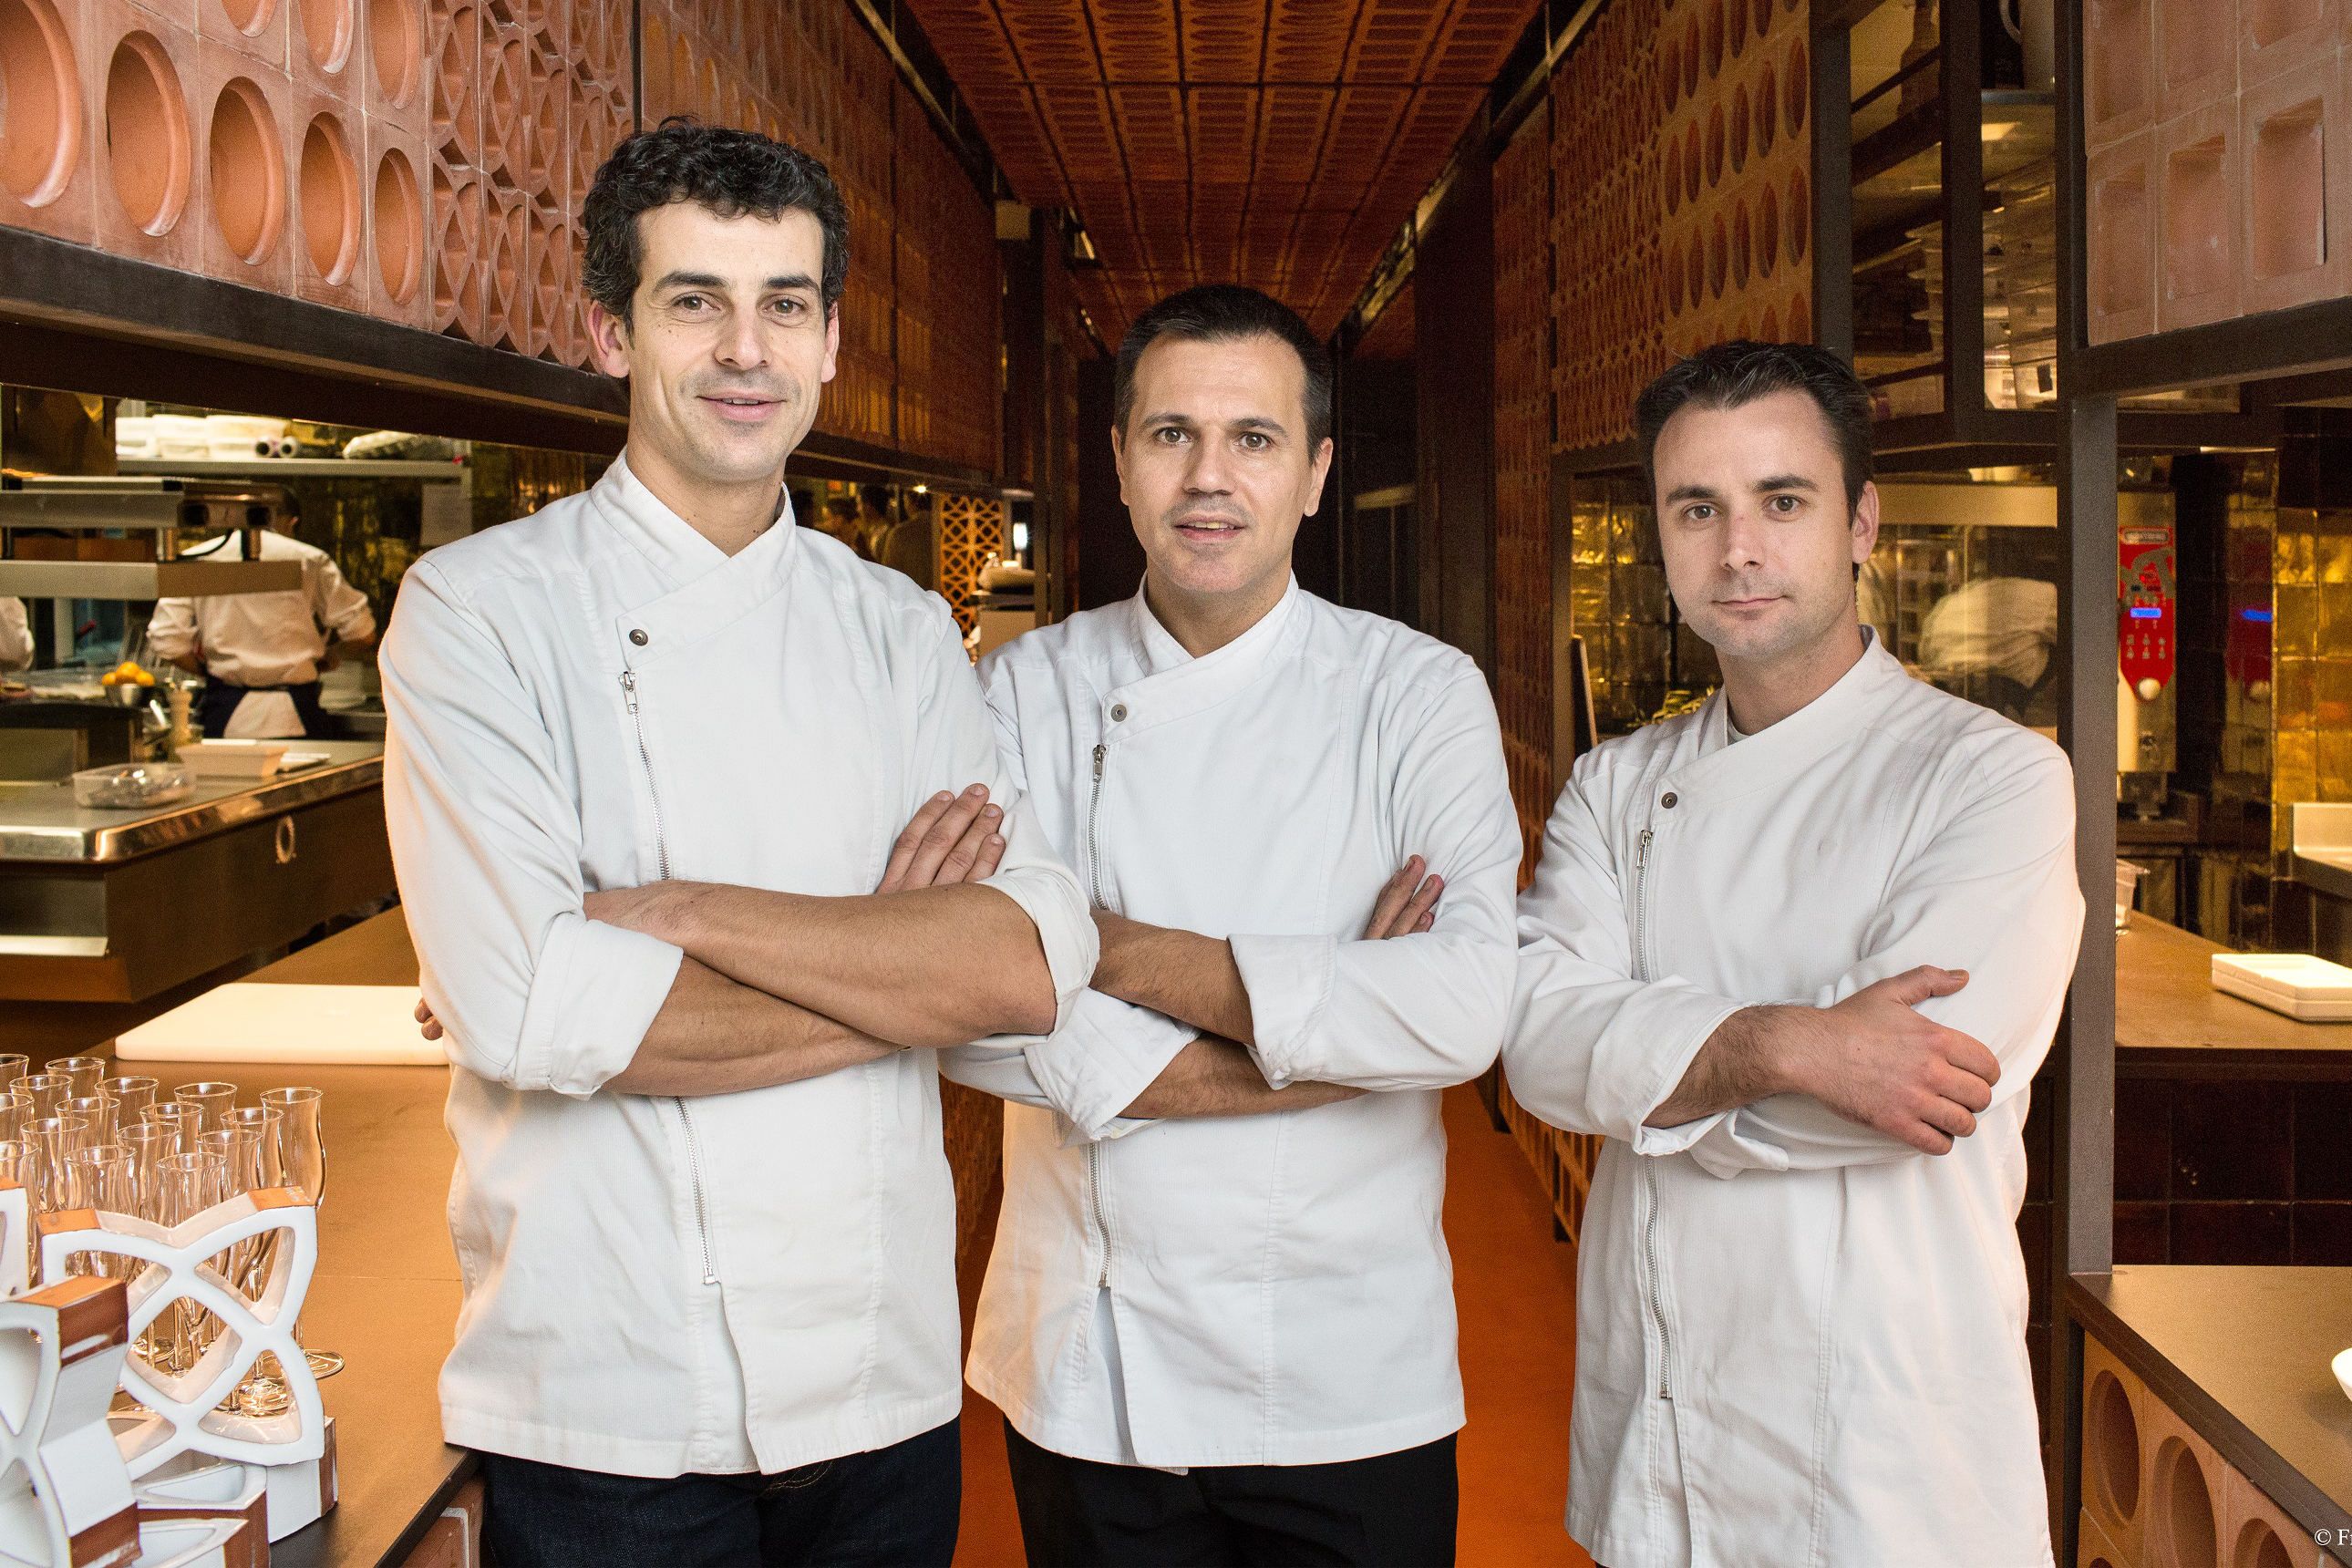 DISFRUTAR – Nel 2017 non era in classifica, oggi occupa la 18esima posizione: il premio per la migliore nuova entrata (Highest New Entry) è andato al ristorante Disfrutar di Barcellona. Non è un caso visto che i tre chef hanno lavorato al Bulli di Ferran Adrià, per cinque volte in cima alla classifica dei 50 Best.